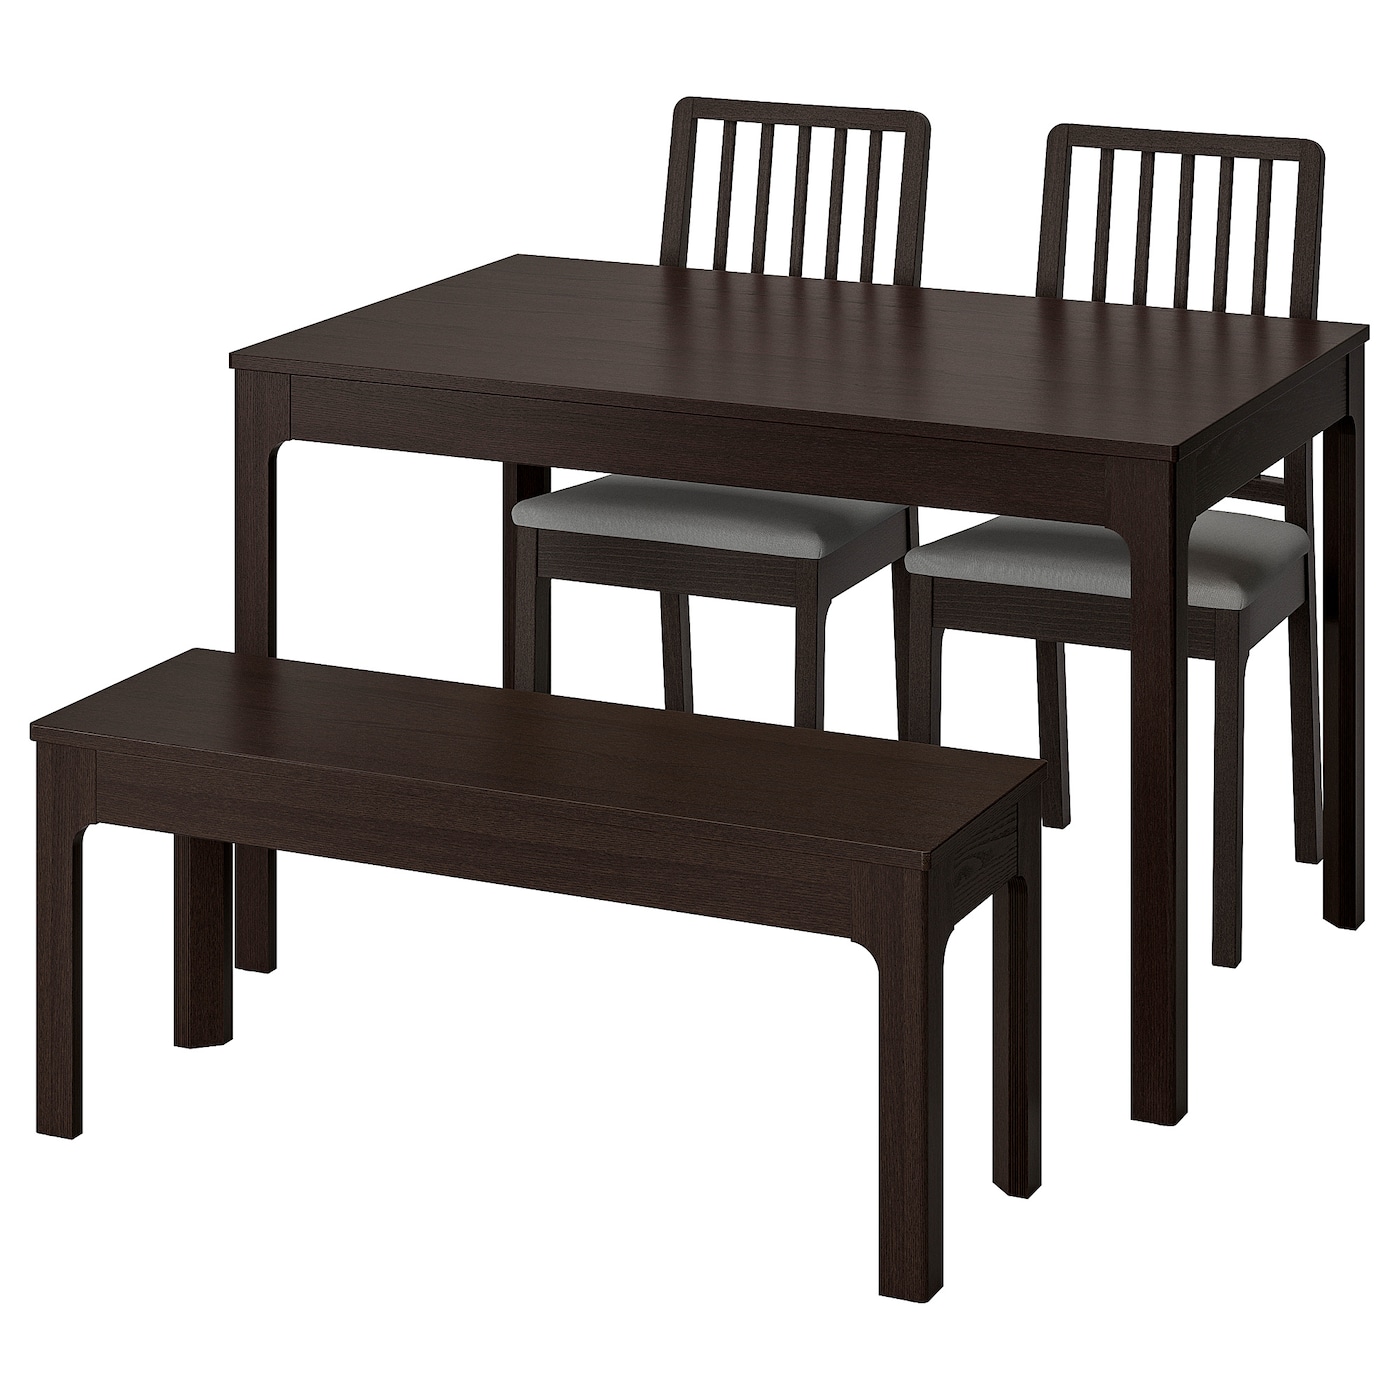 Стол и 2 скамейки - EKEDALEN / EKEDALEN IKEA/ ЭКЕДАЛЕН ИКЕА, 180/120 см, коричневый